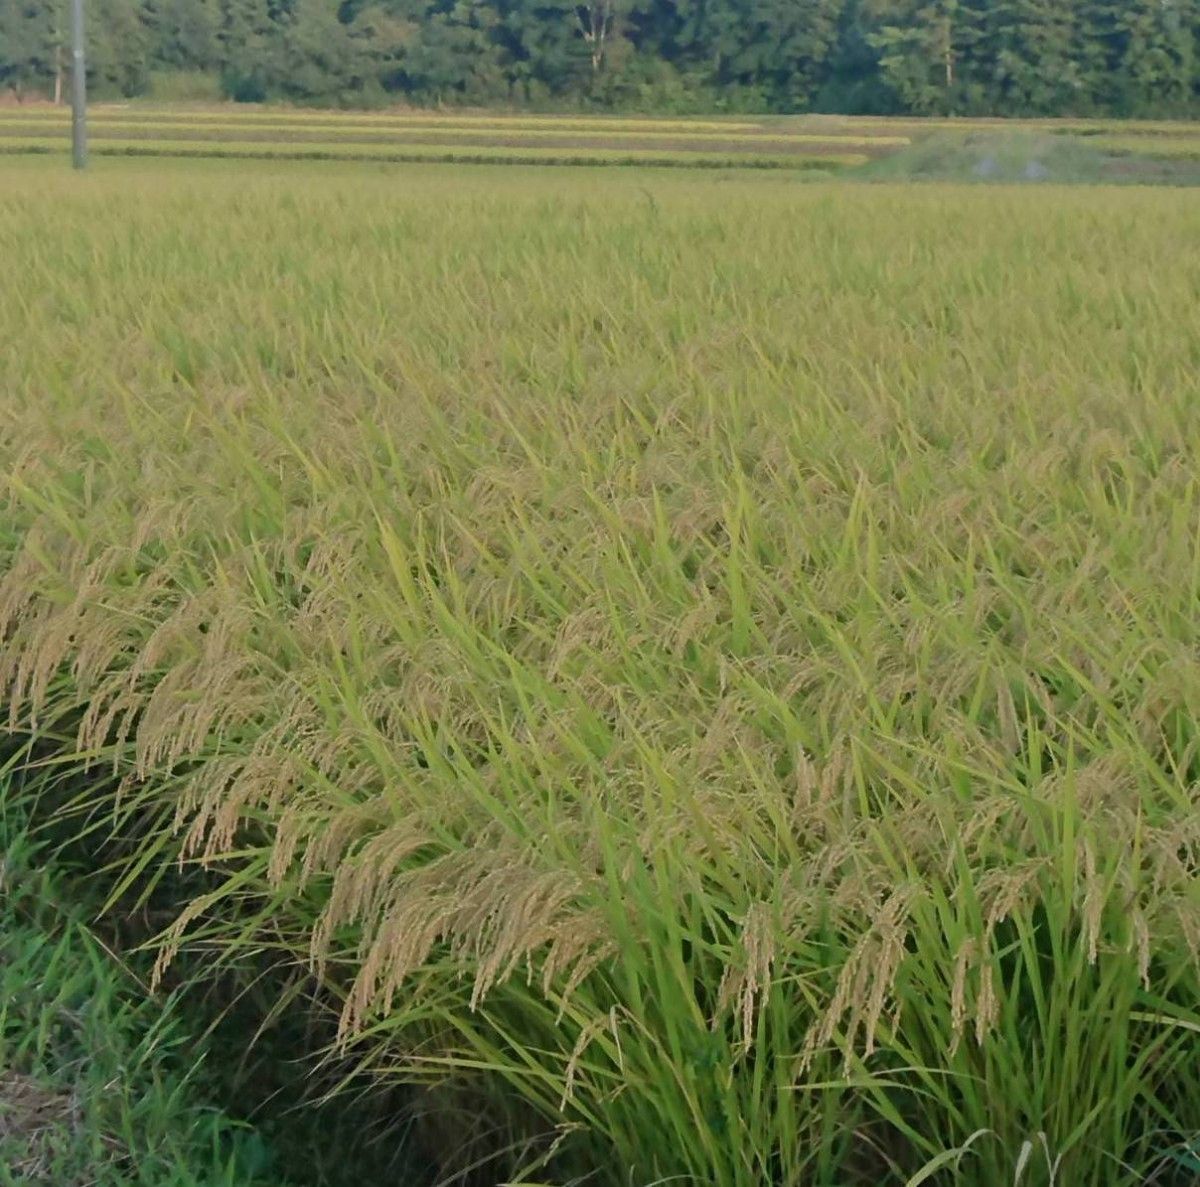 令和5年度『精白米1.8kg』宮城県産ひとめぼれ 減農薬栽培環境保全米